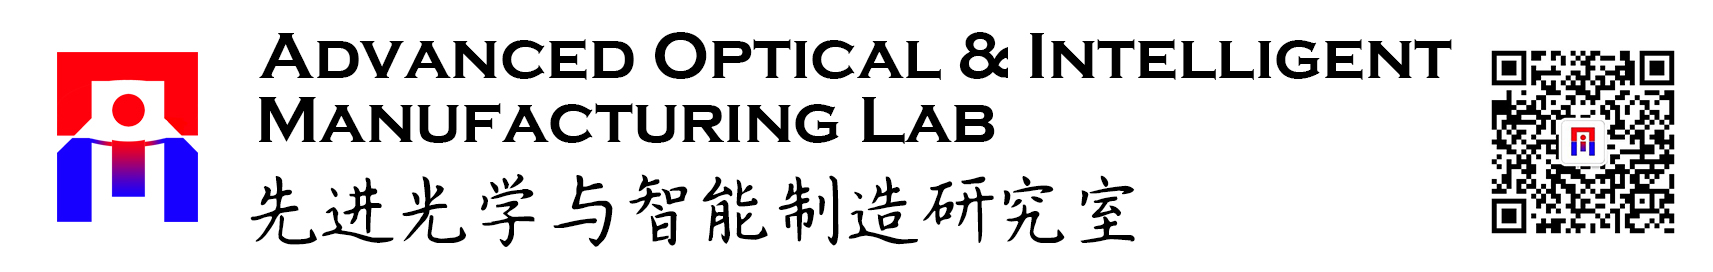 实验室标志二维码-new.jpg